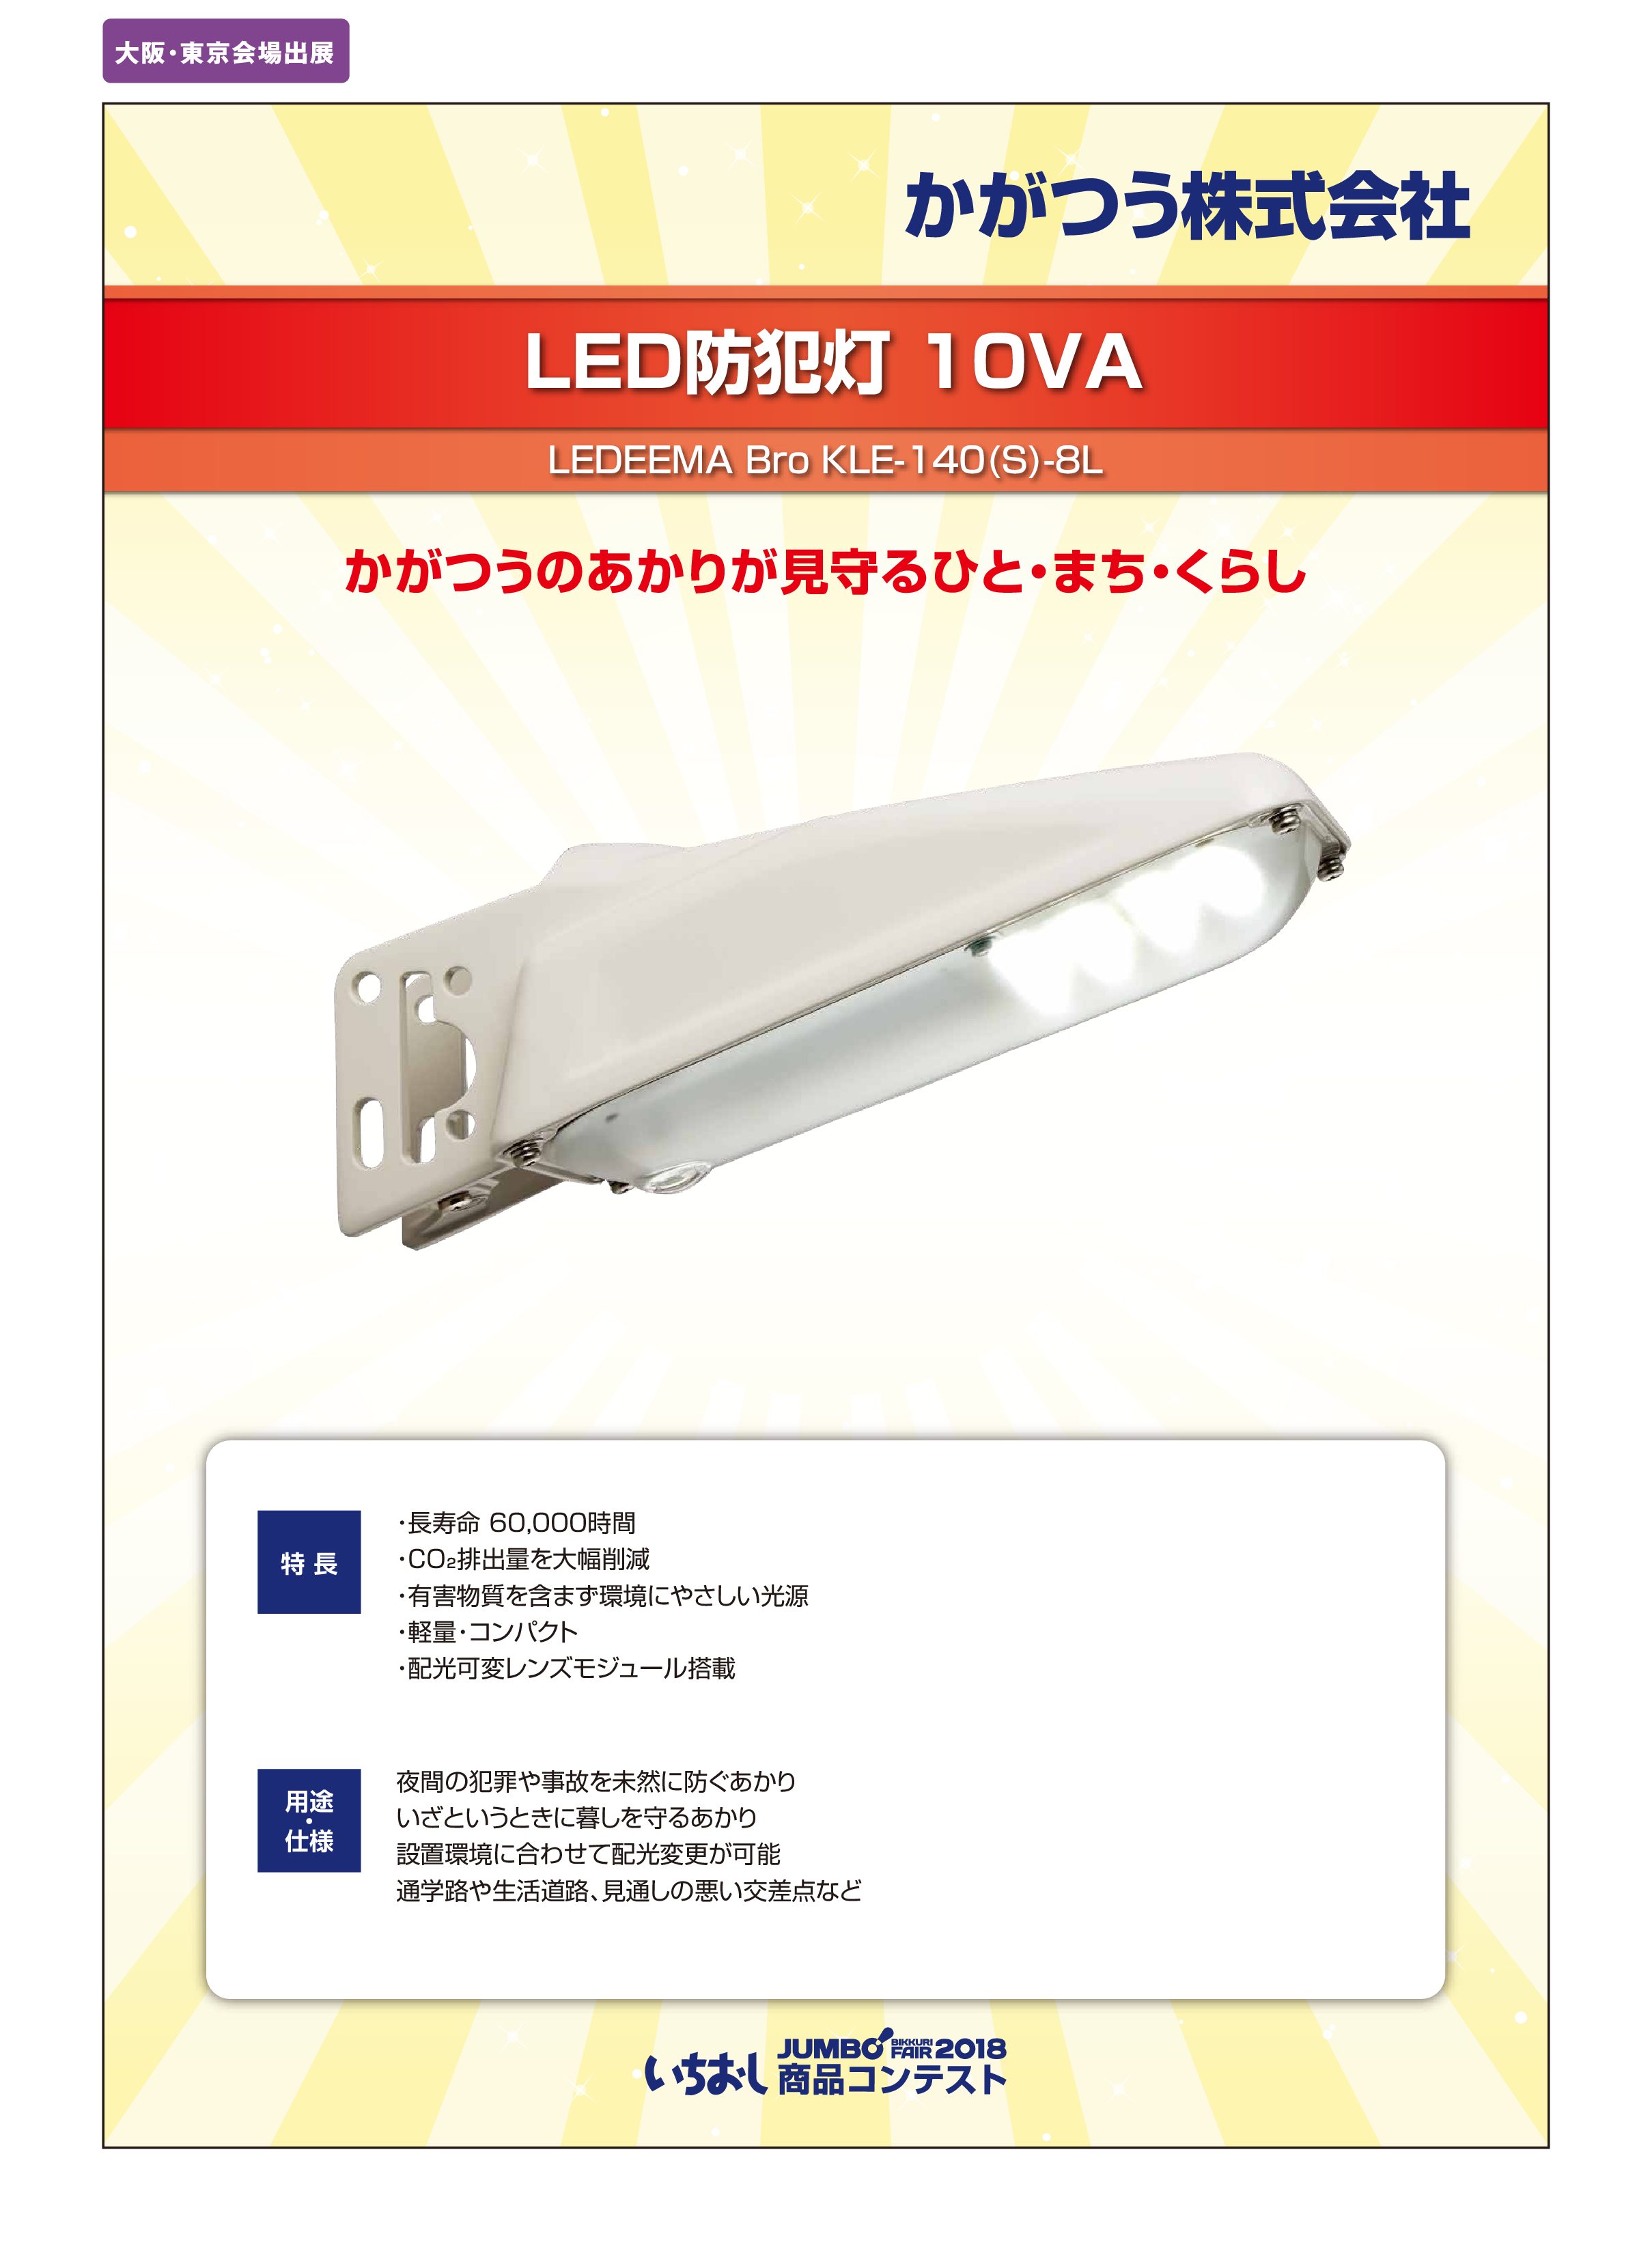 LED防犯灯 10VA」かがつう株式会社